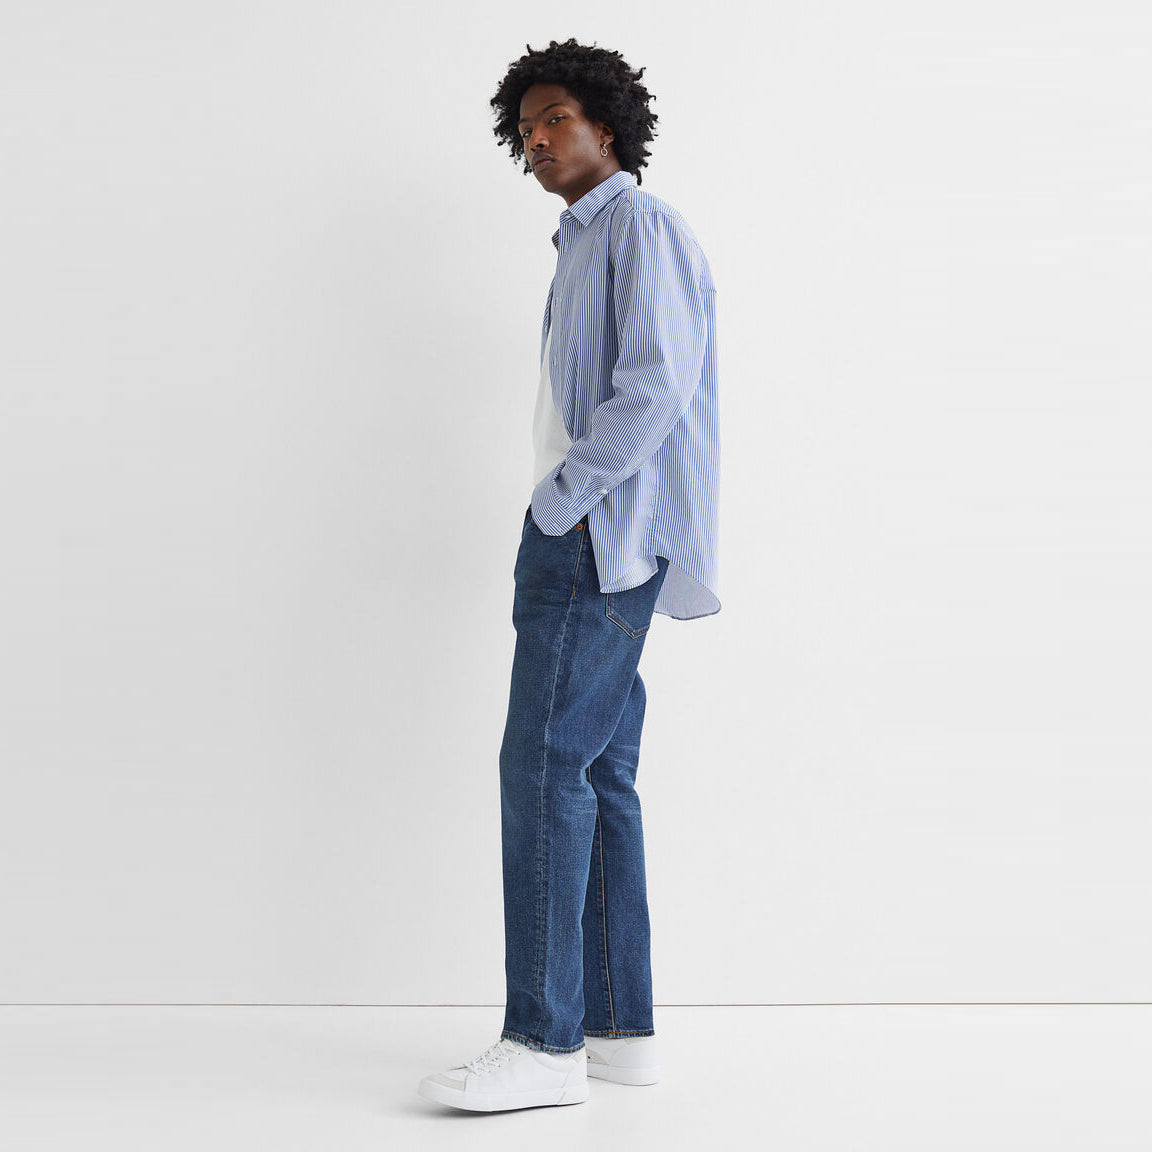 Celana Jeans Pria Denim Tersedia 3 Warna [HMJM 01]